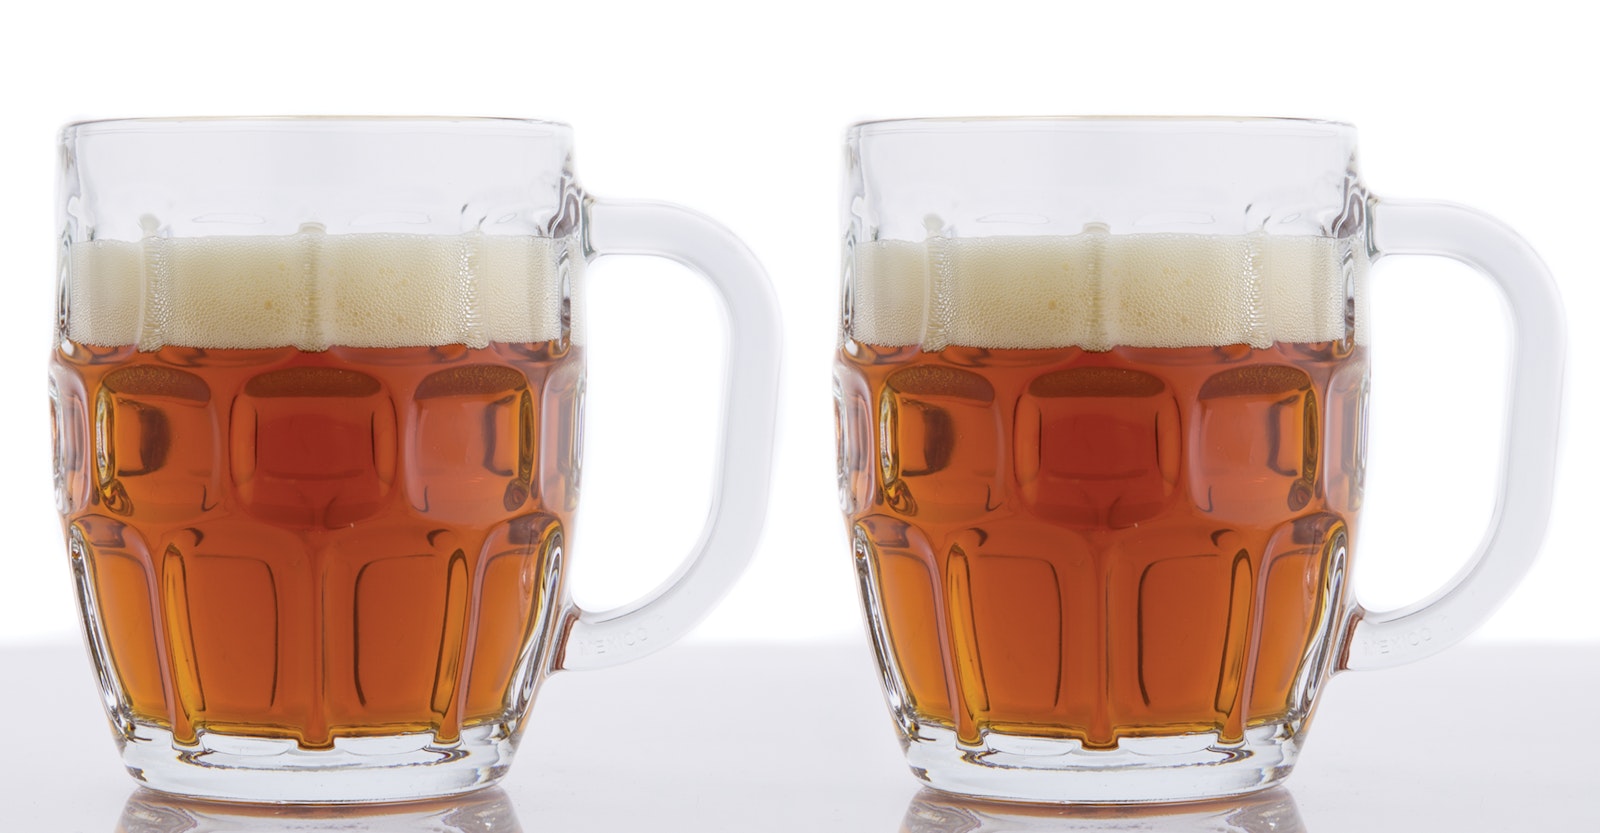 Parcel en sælger Stirre Make Your Best Helles | Craft Beer & Brewing